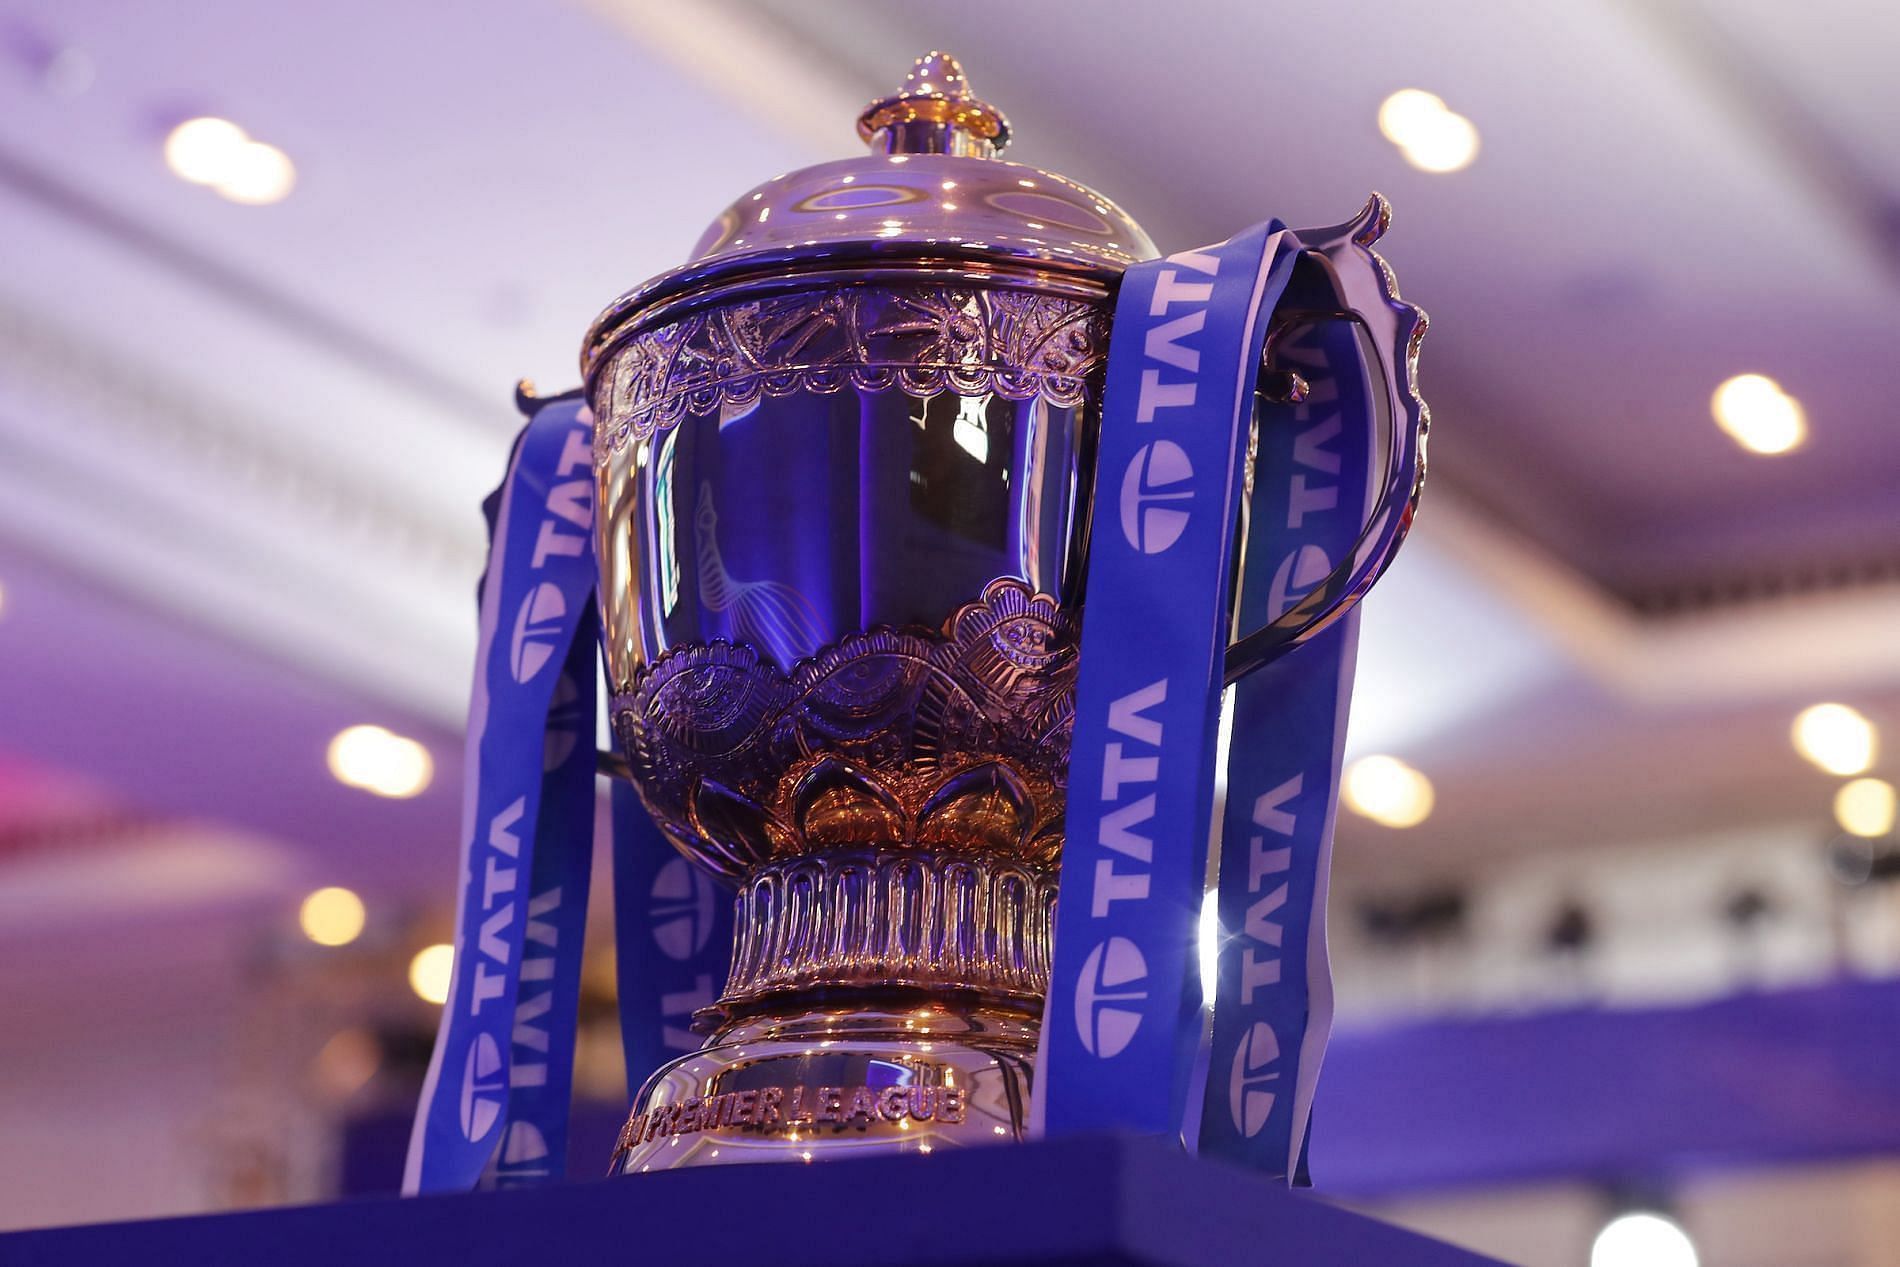 The Indian Premier League 2022 trophy